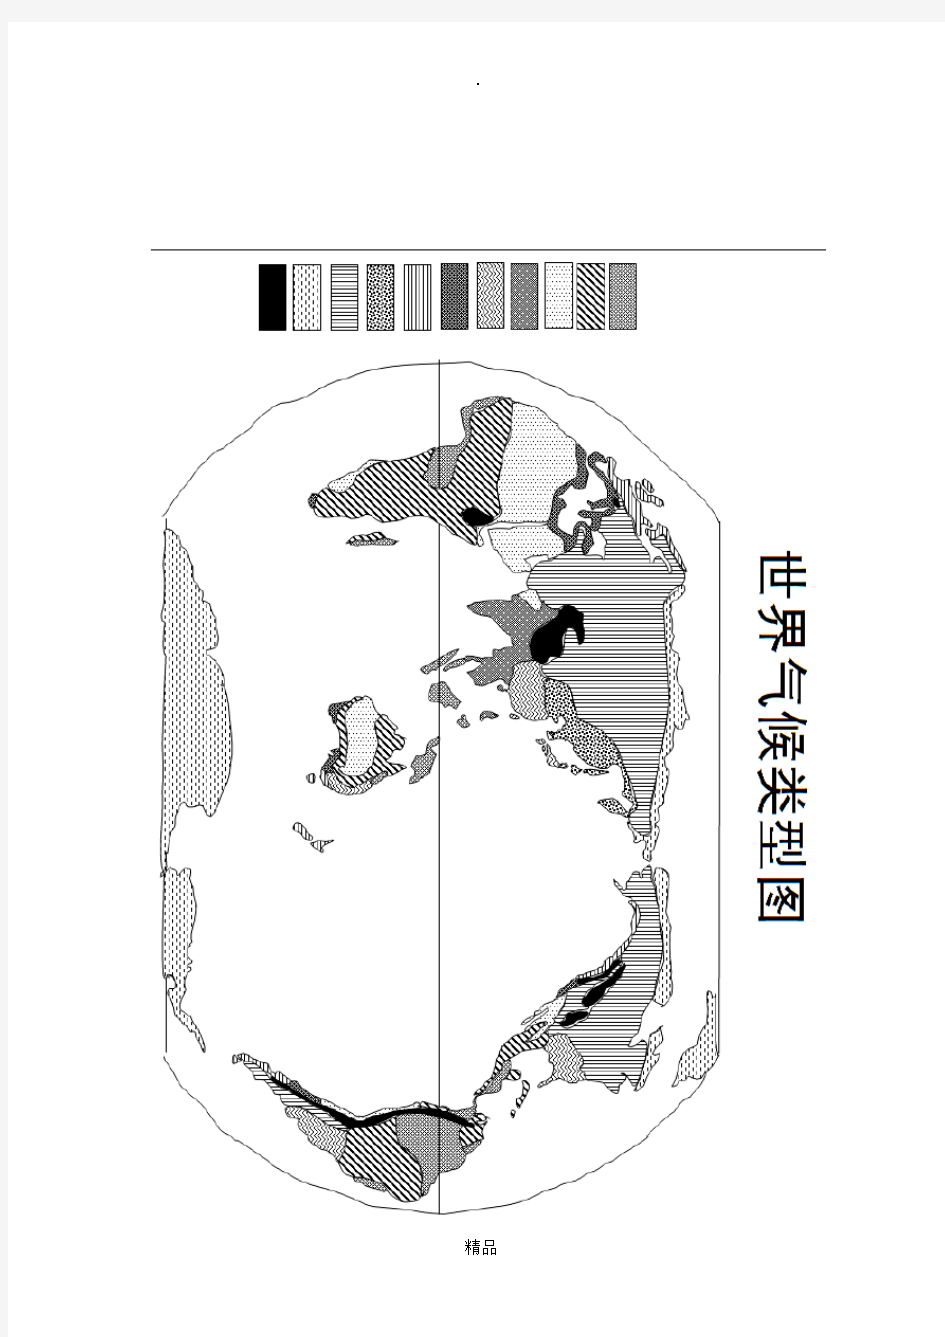 世界地图空白图(高清版)61539